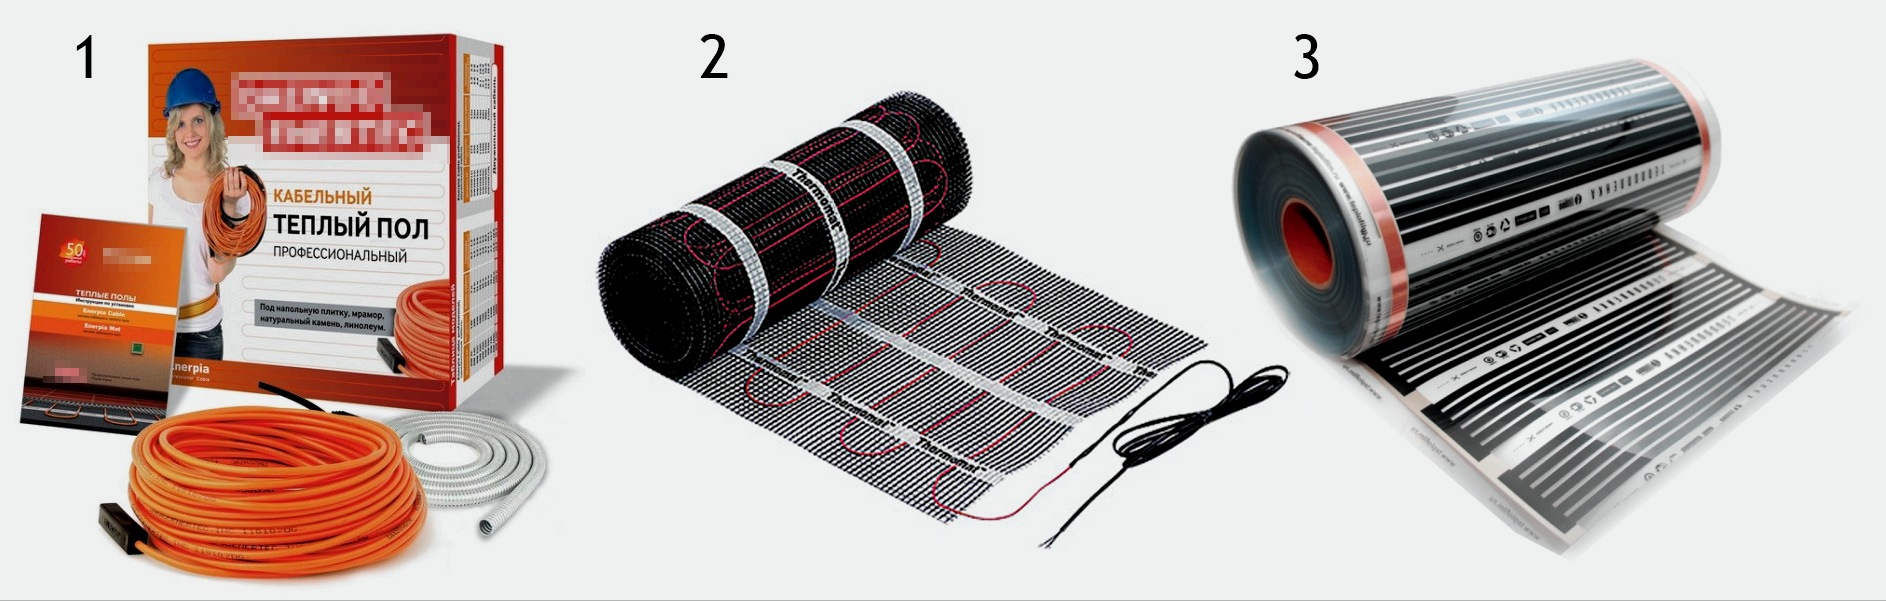 Instalación de suelo radiante eléctrico: cable y película infrarroja